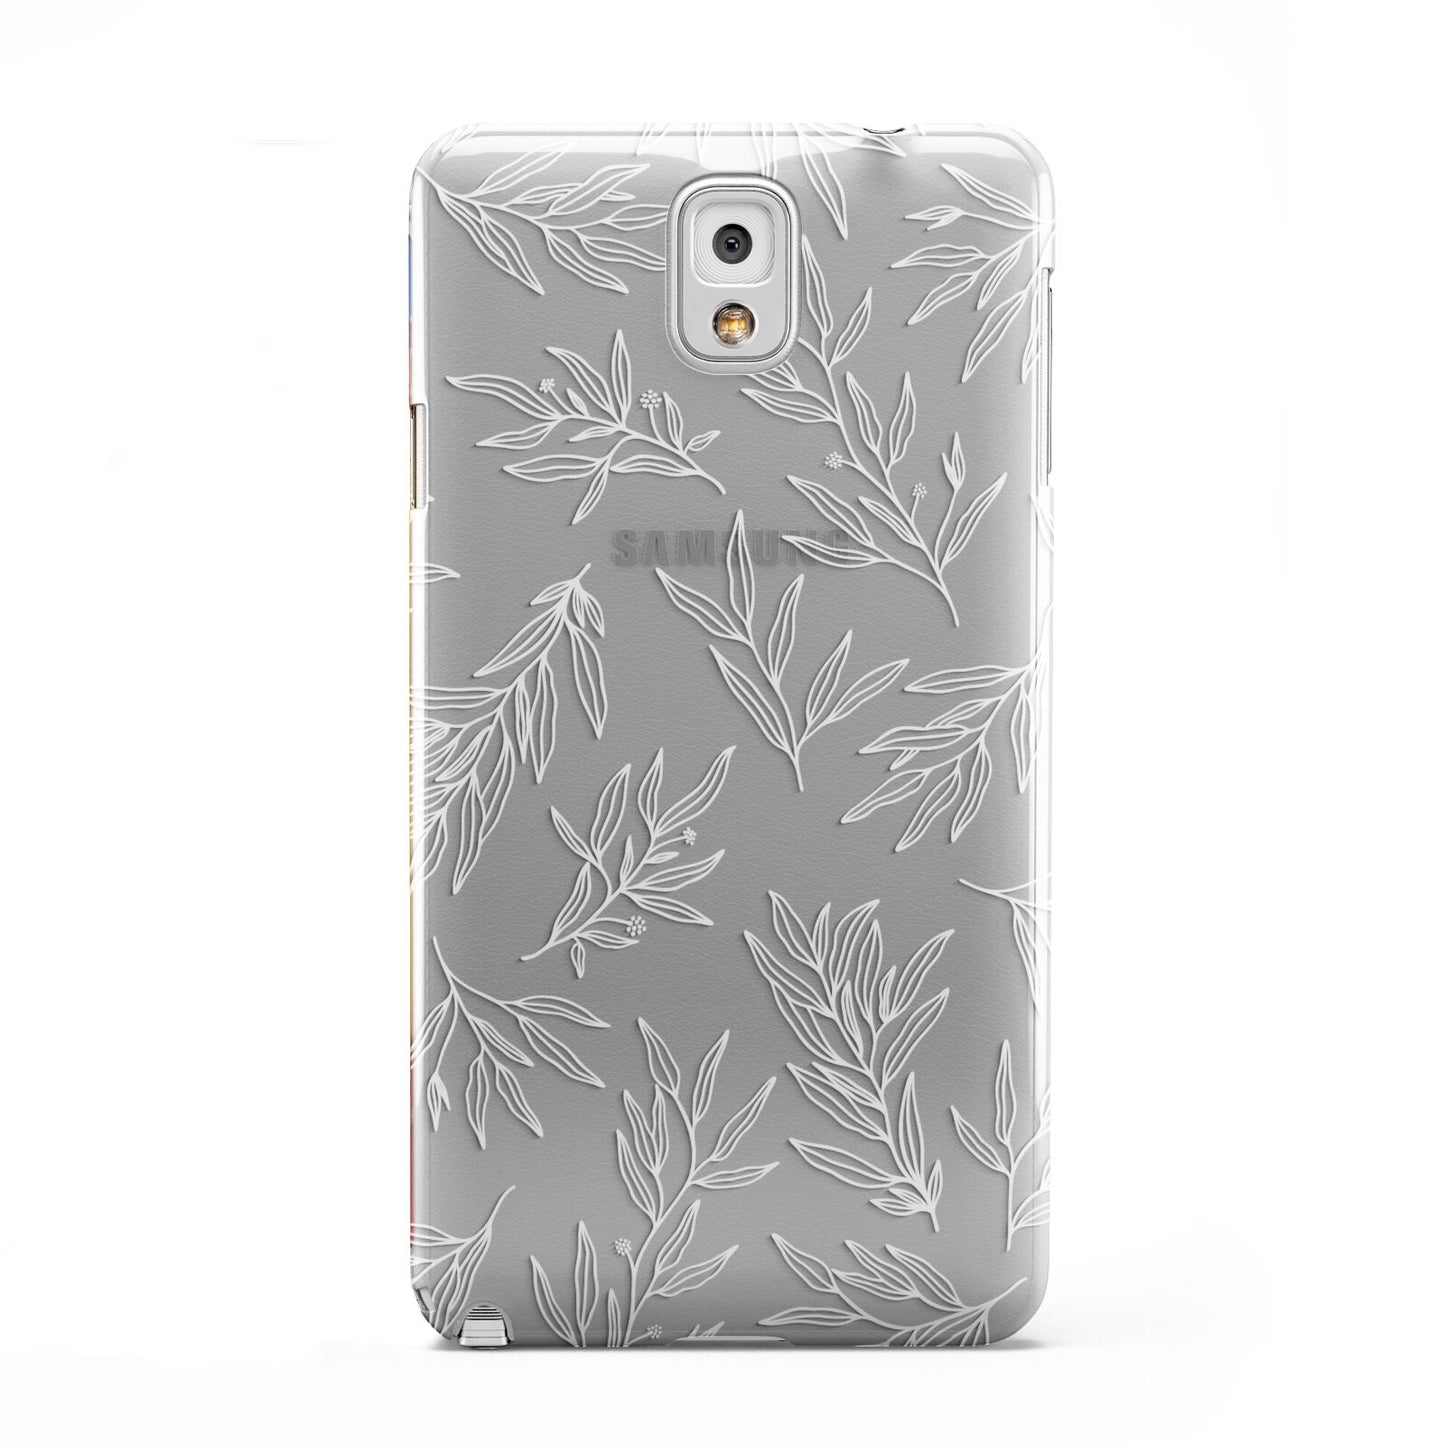 Botanical Leaf Samsung Galaxy Note 3 Case